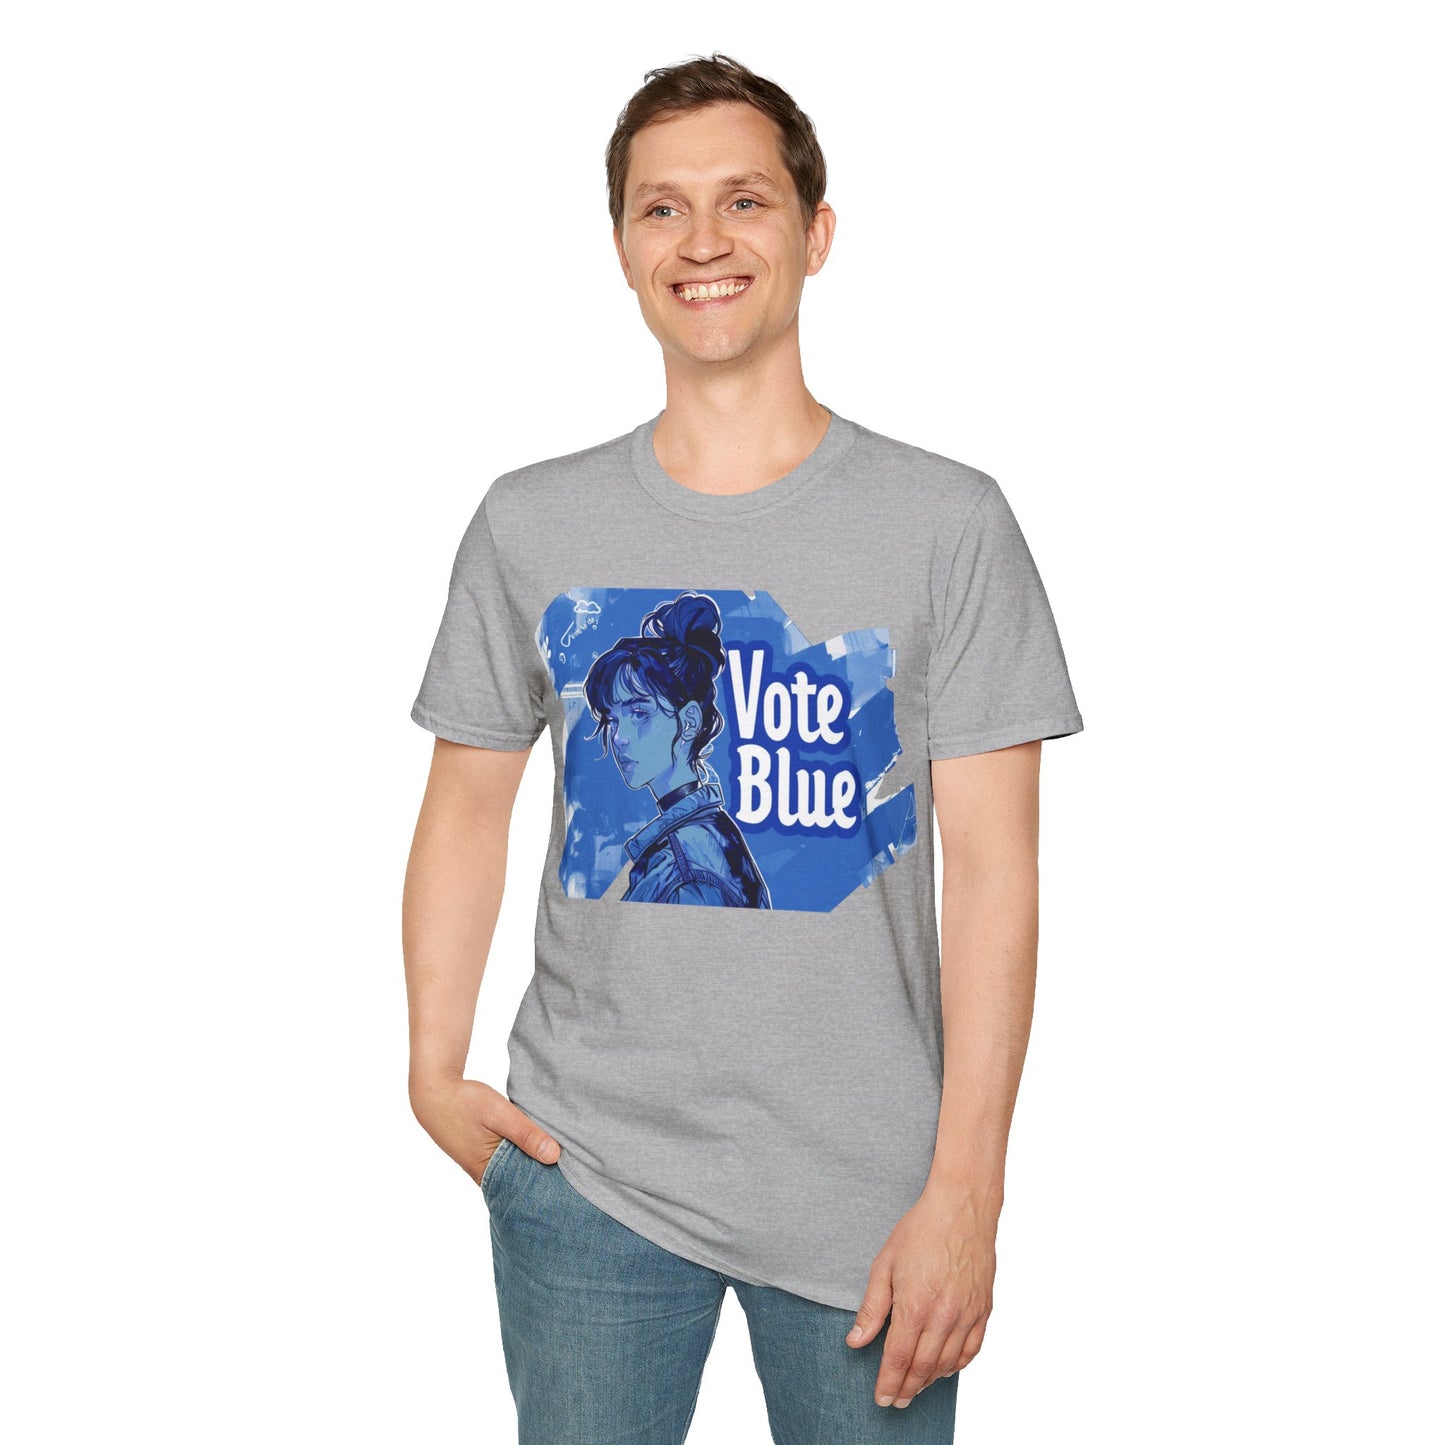 Vote Blue Political T-Shirt Vote Shirt Activism Save Democracy tshirt unisex tee Statement Inspire Activist Shirt Anti Trump